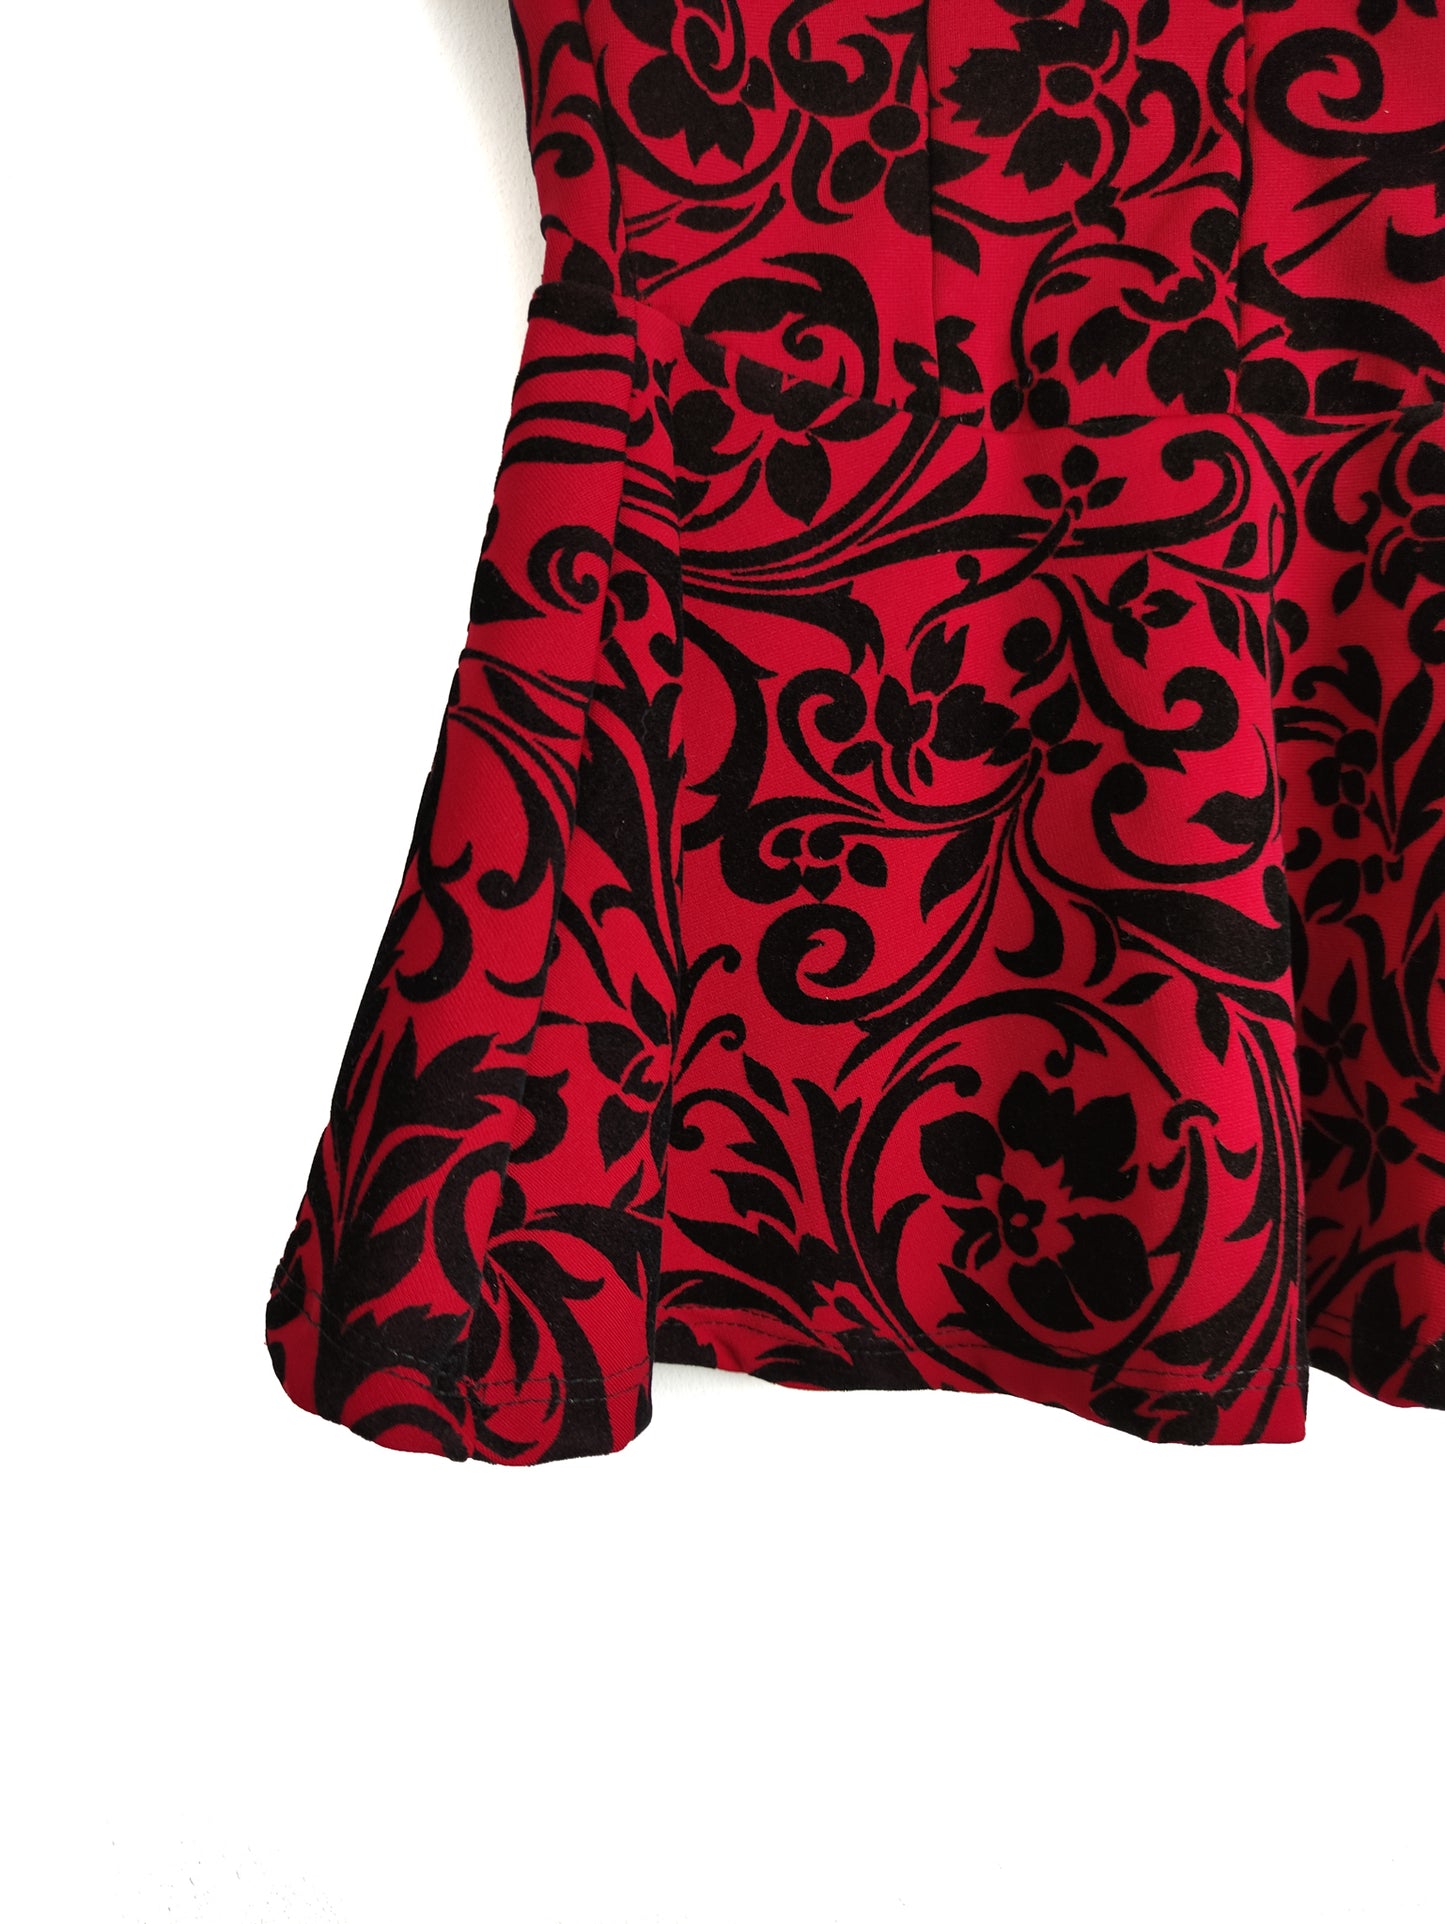 Αμάνικη Γυναικεία Μπλούζα σε Κόκκινο Χρώμα (XS/S)